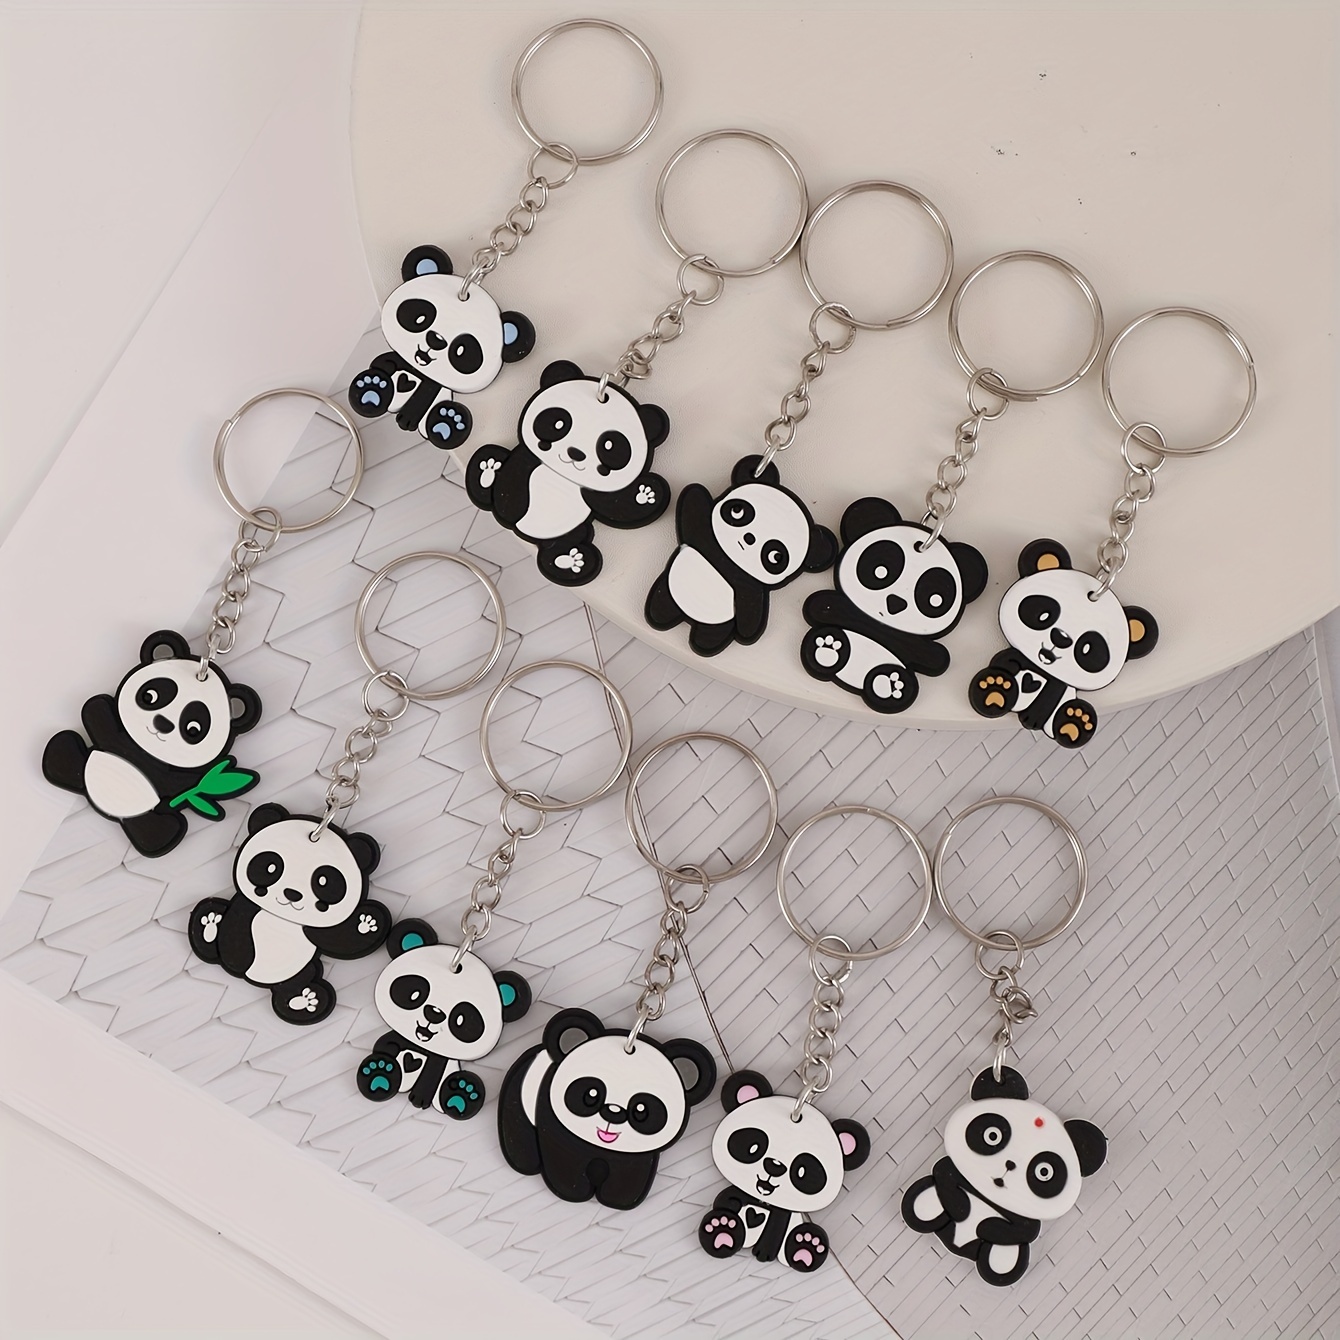 Panda Schlüsselanhänger - Kostenlose Rückgabe Innerhalb Von 90